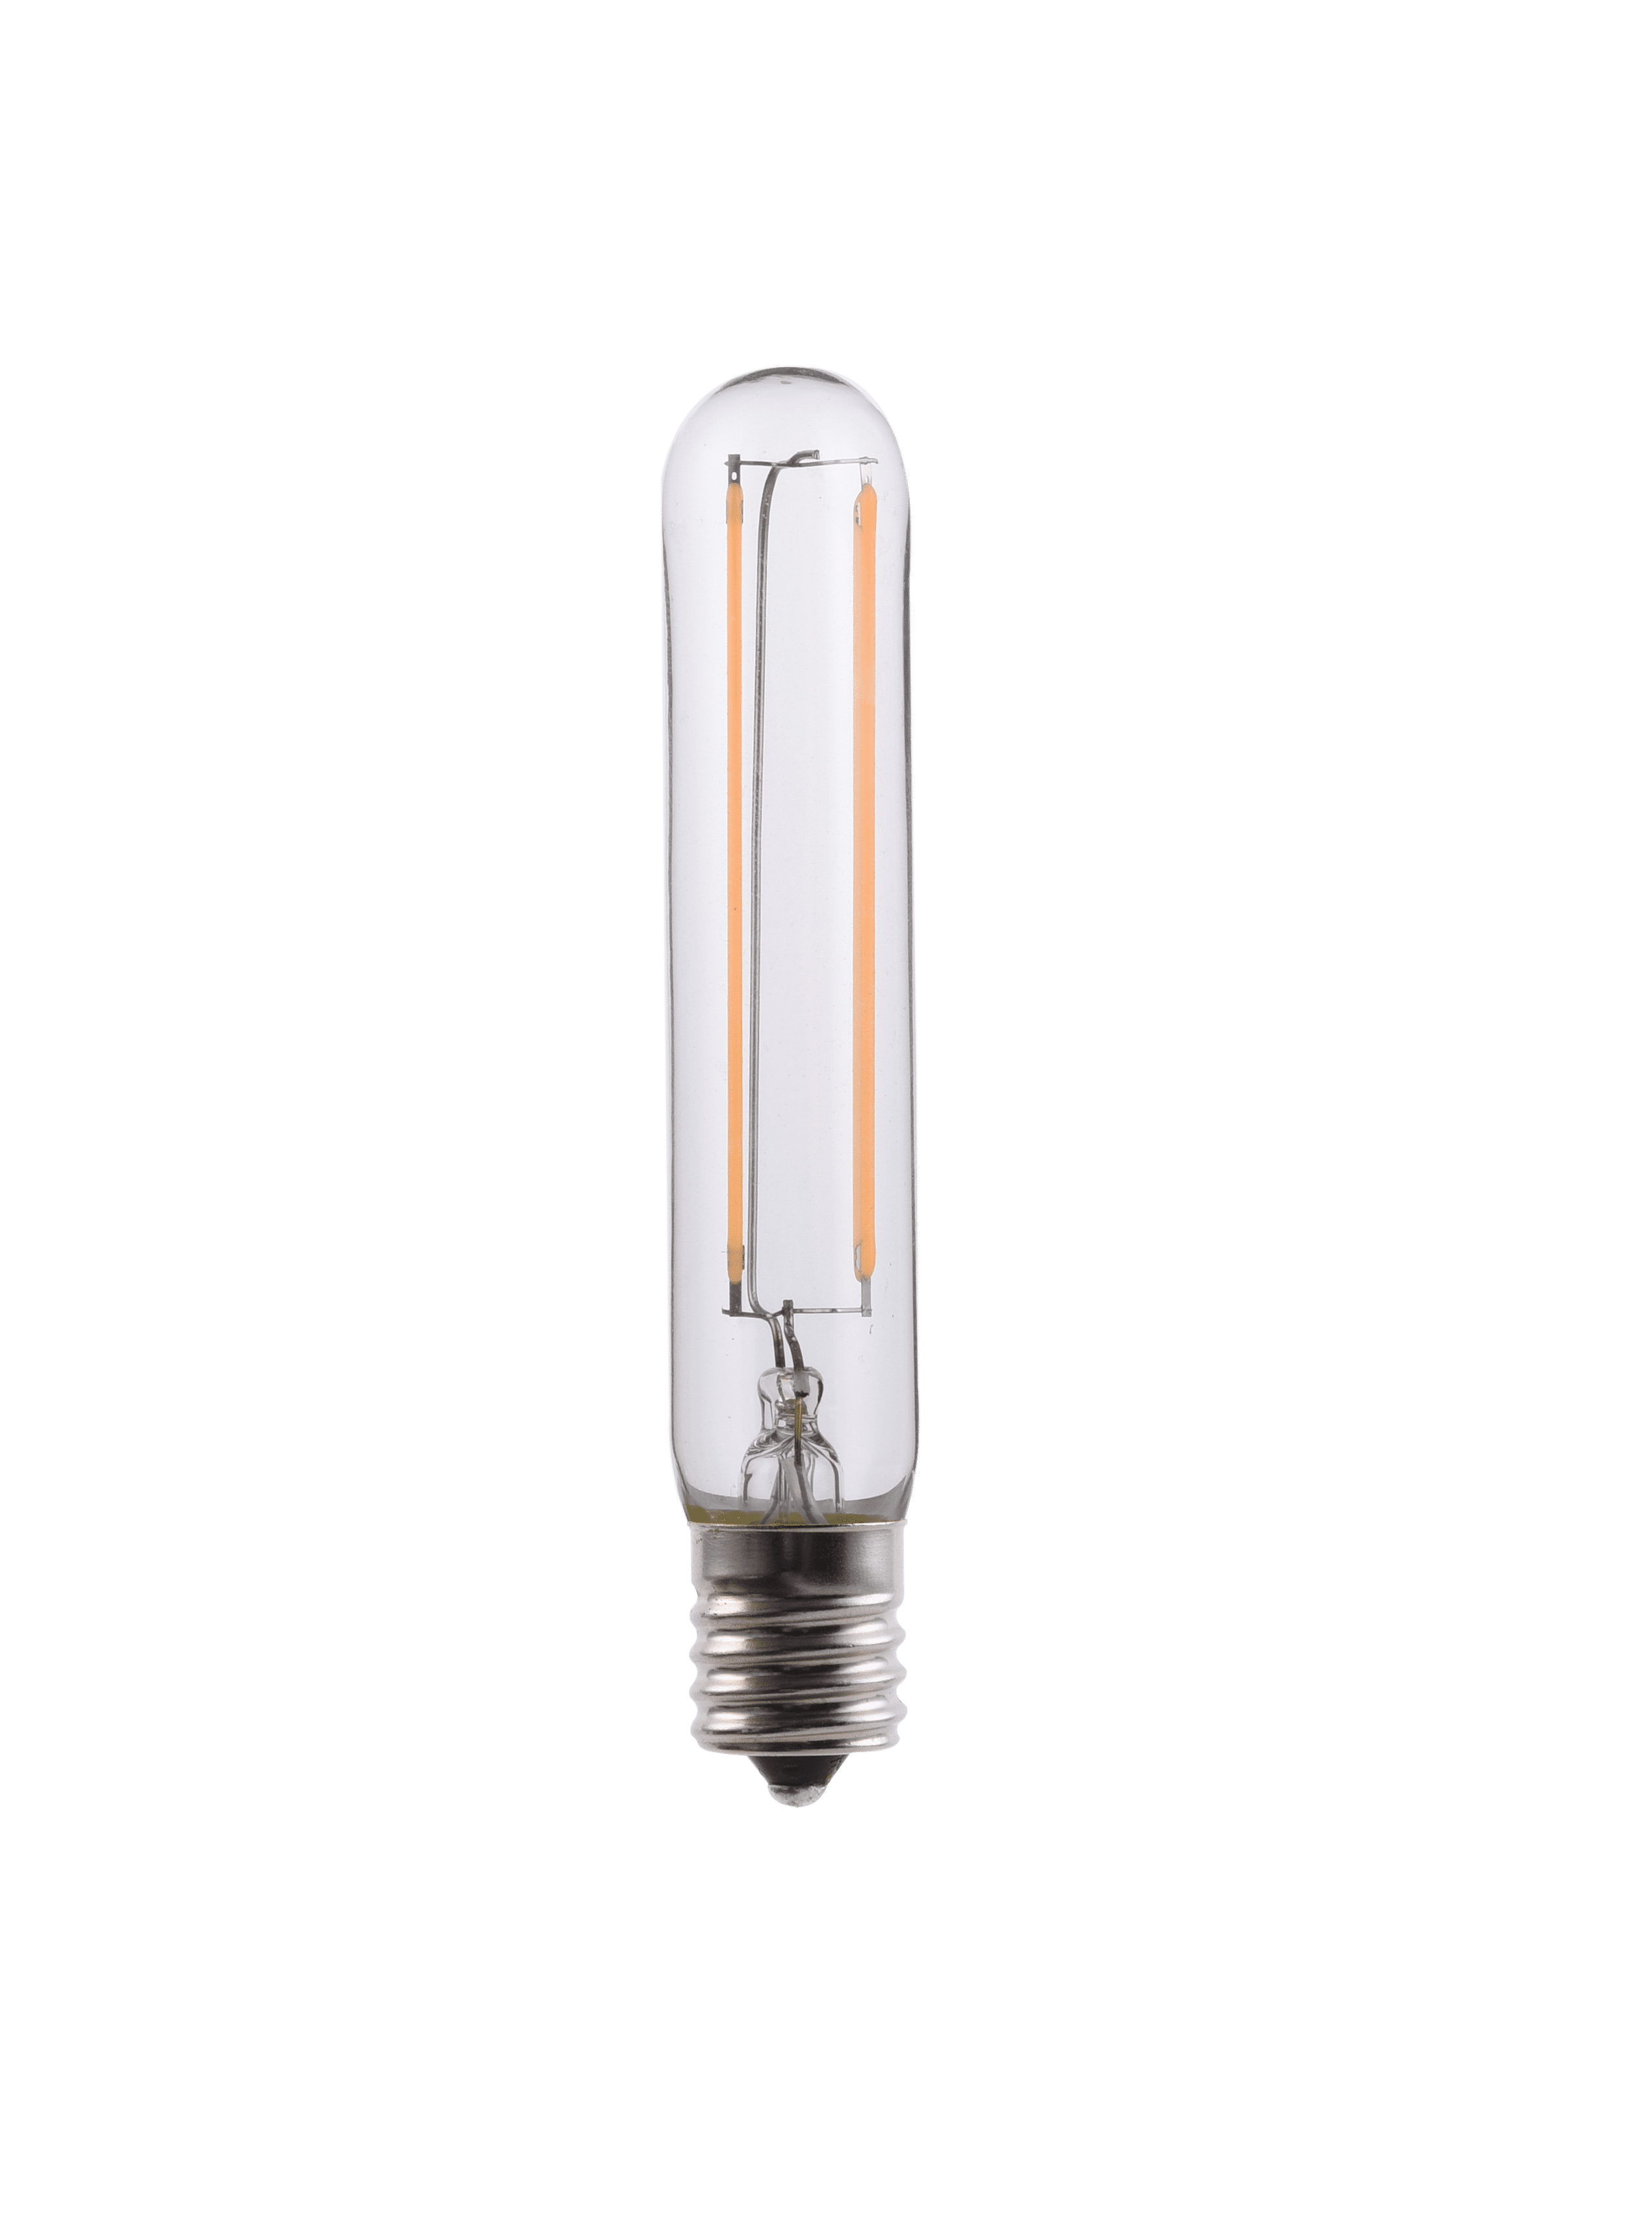 Doright T6 LED Bulb Dimmable LED Light Bulb 4W T6.5 E17 LED Tubular Bulb Clear Glass LED T6 Tube Light for Lamp Lighting Filament Intermediate Base LED Bulb Replace 40W E17 Halogen 